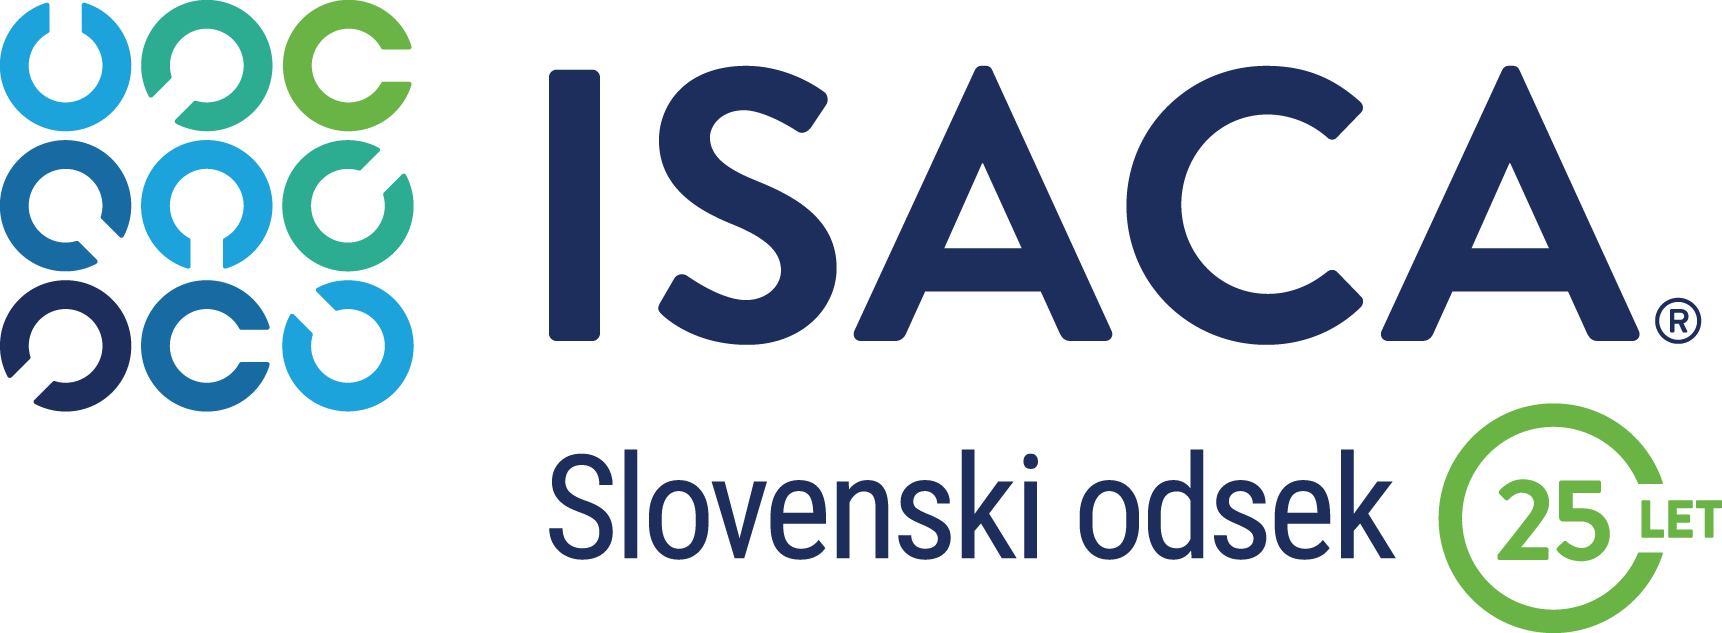 ISACA Sovenski odsek